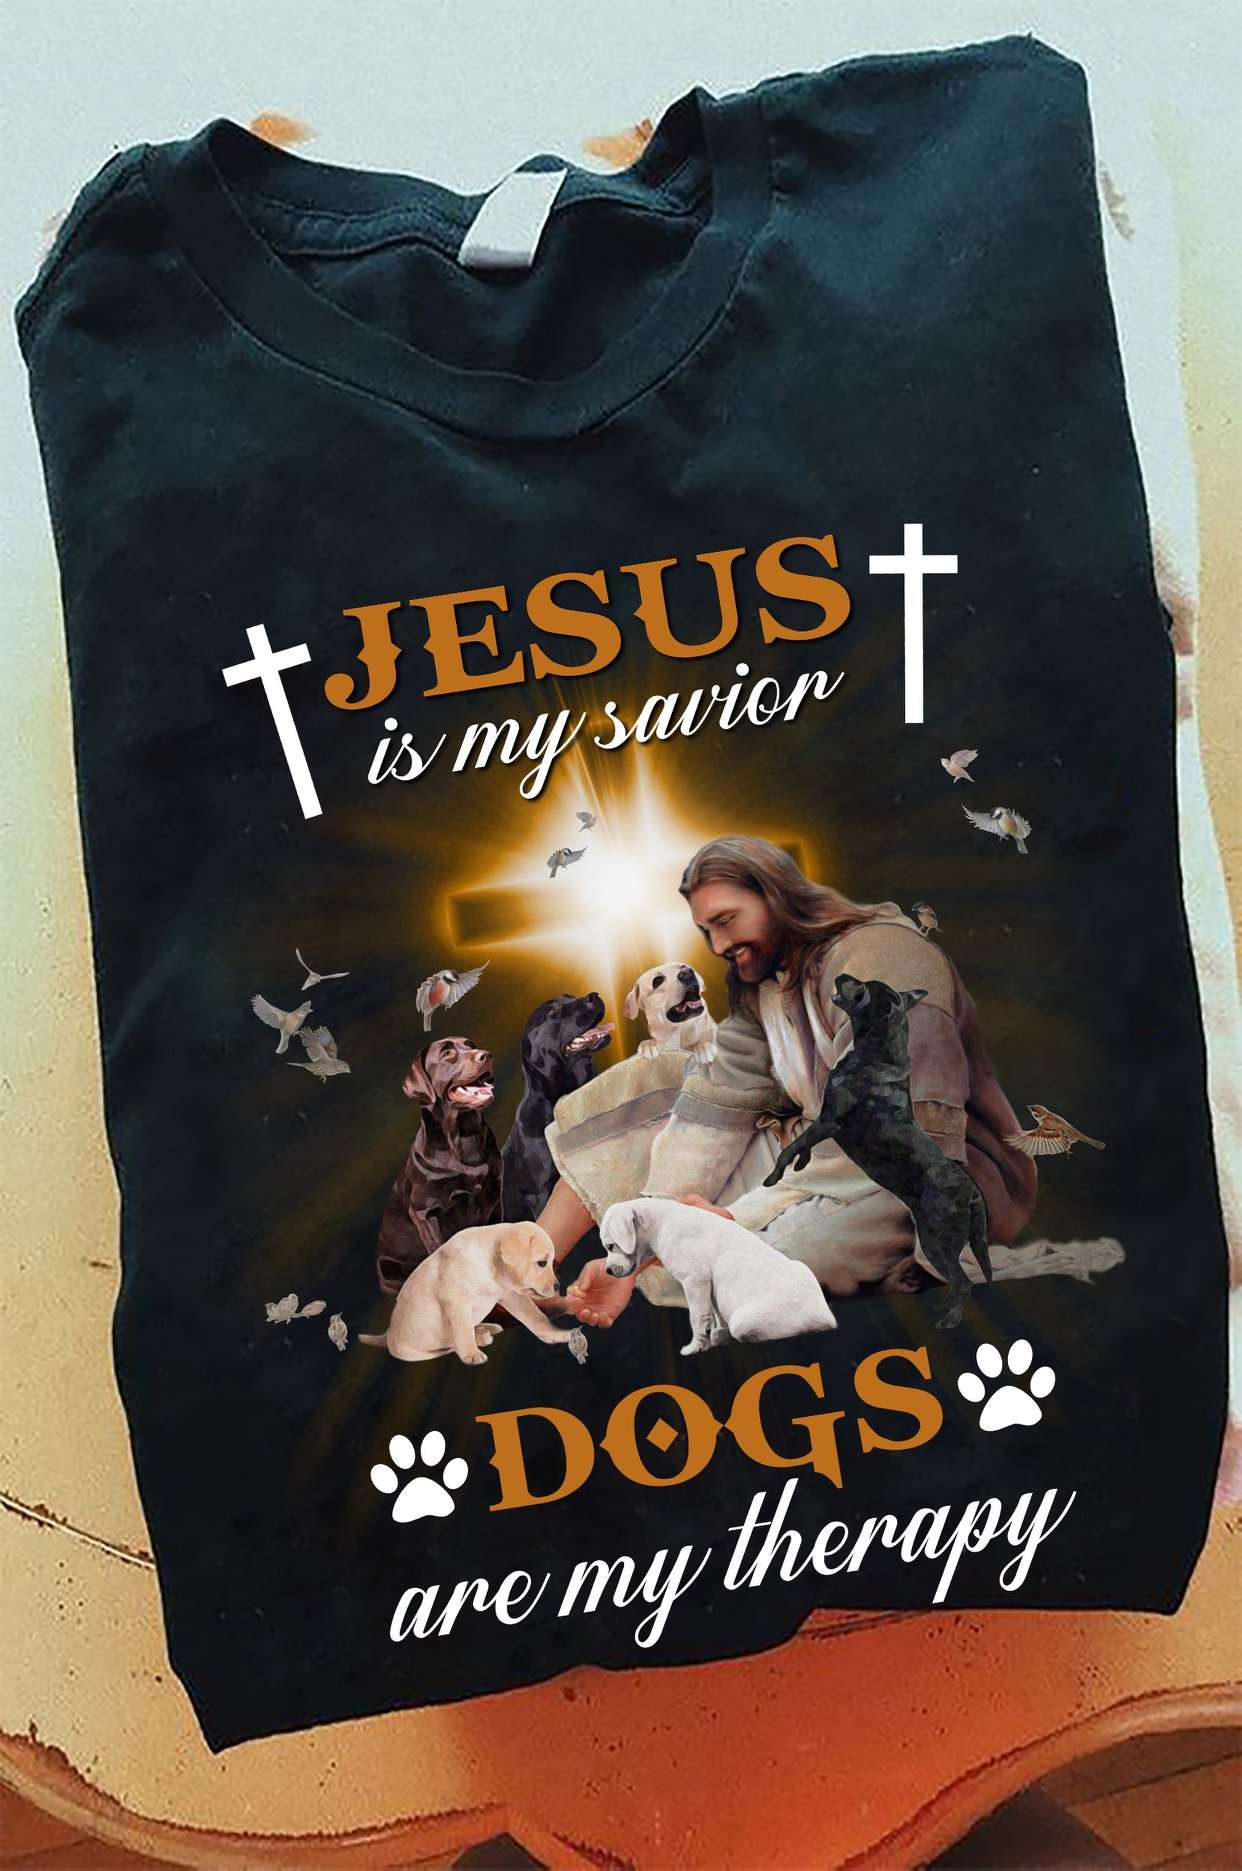 Jesus With Labrador Retriever - Jesus is my savior dogs are my therapy